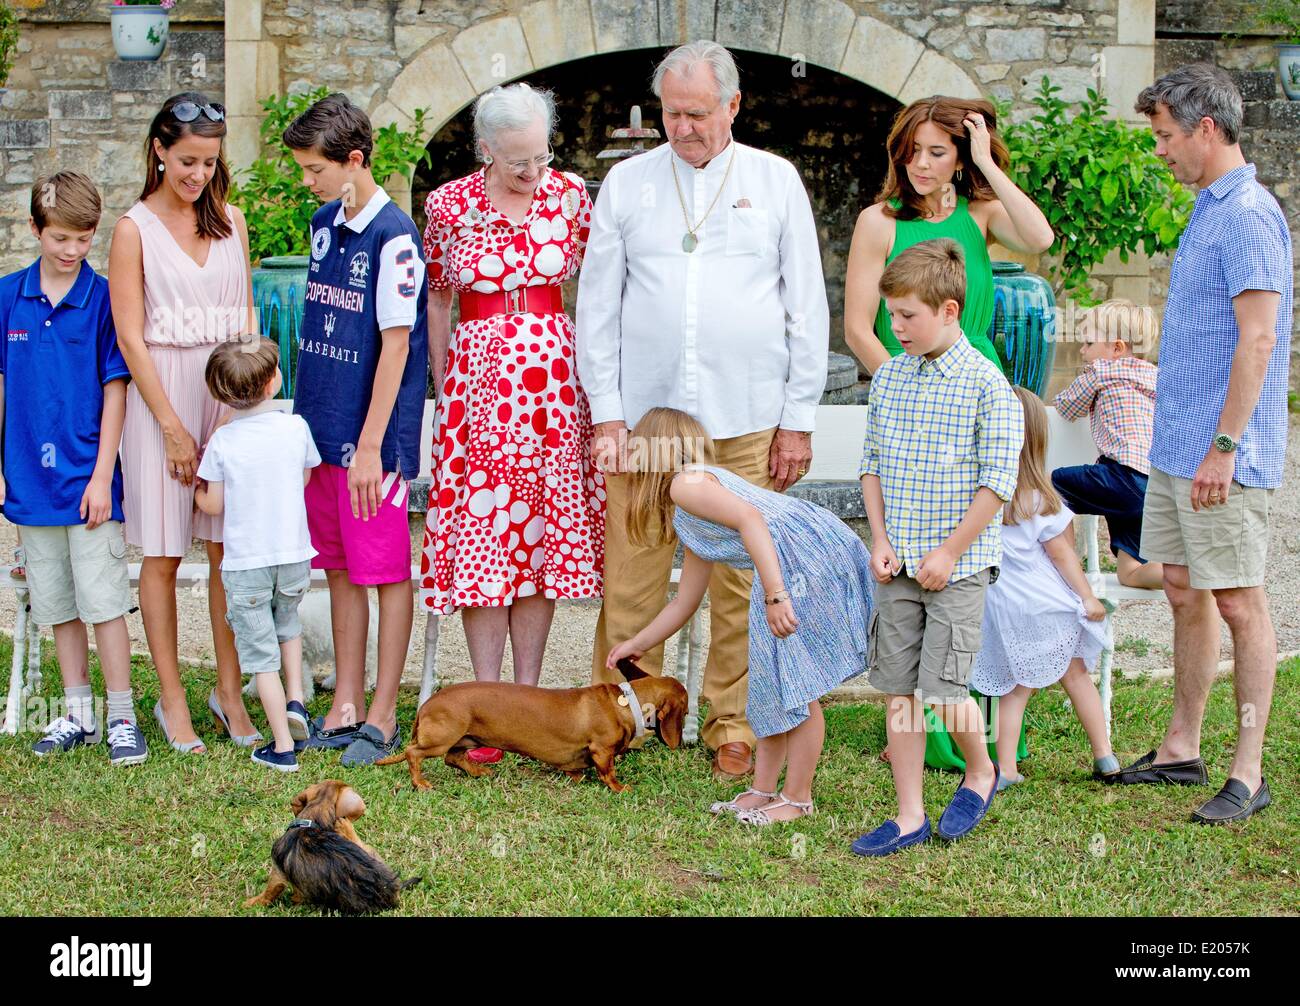 cahors-francia-11-de-junio-de-2014-l-r-principe-felix-la-princesa-marie-el-principe-henrik-el-principe-nikolai-la-reina-margrethe-ii-el-principe-henrik-la-princesa-isabel-el-principe-cristiano-crown-princess-la-princesa-maria-josefina-principe-voincent-y-el-principe-heredero-frederik-de-dinamarca-durante-la-sesion-de-fotos-con-motivo-del-80-cumpleanos-del-principe-henrik-en-chateau-de-cayx-en-francia-el-11-de-junio-de-2014-credito-dpa-picture-alliancealamy-live-news-e2057k.jpg